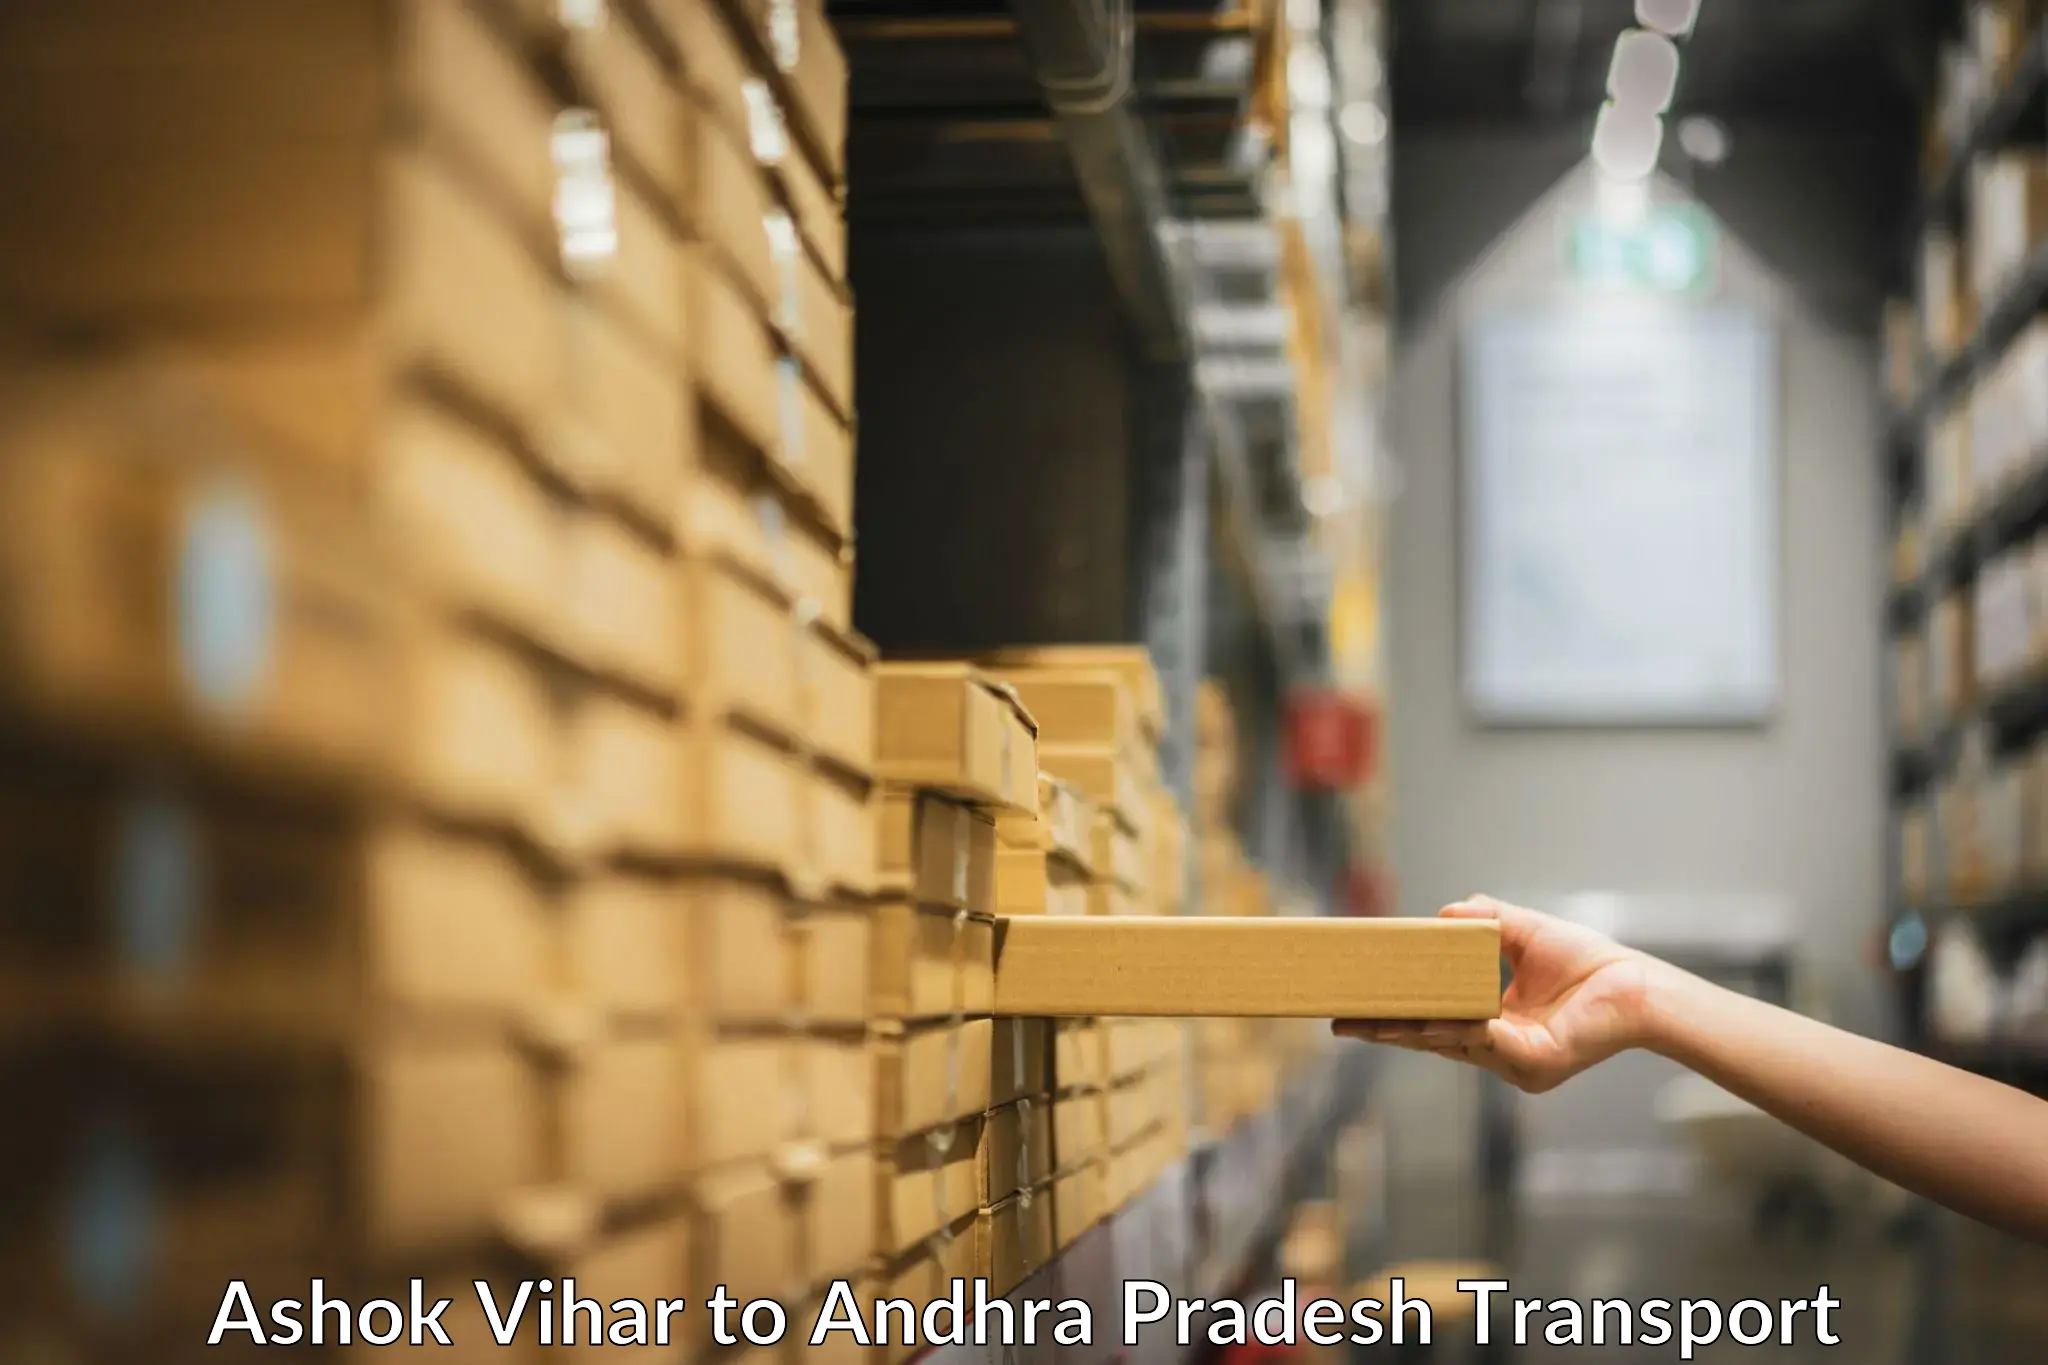 Land transport services Ashok Vihar to Tada Tirupati